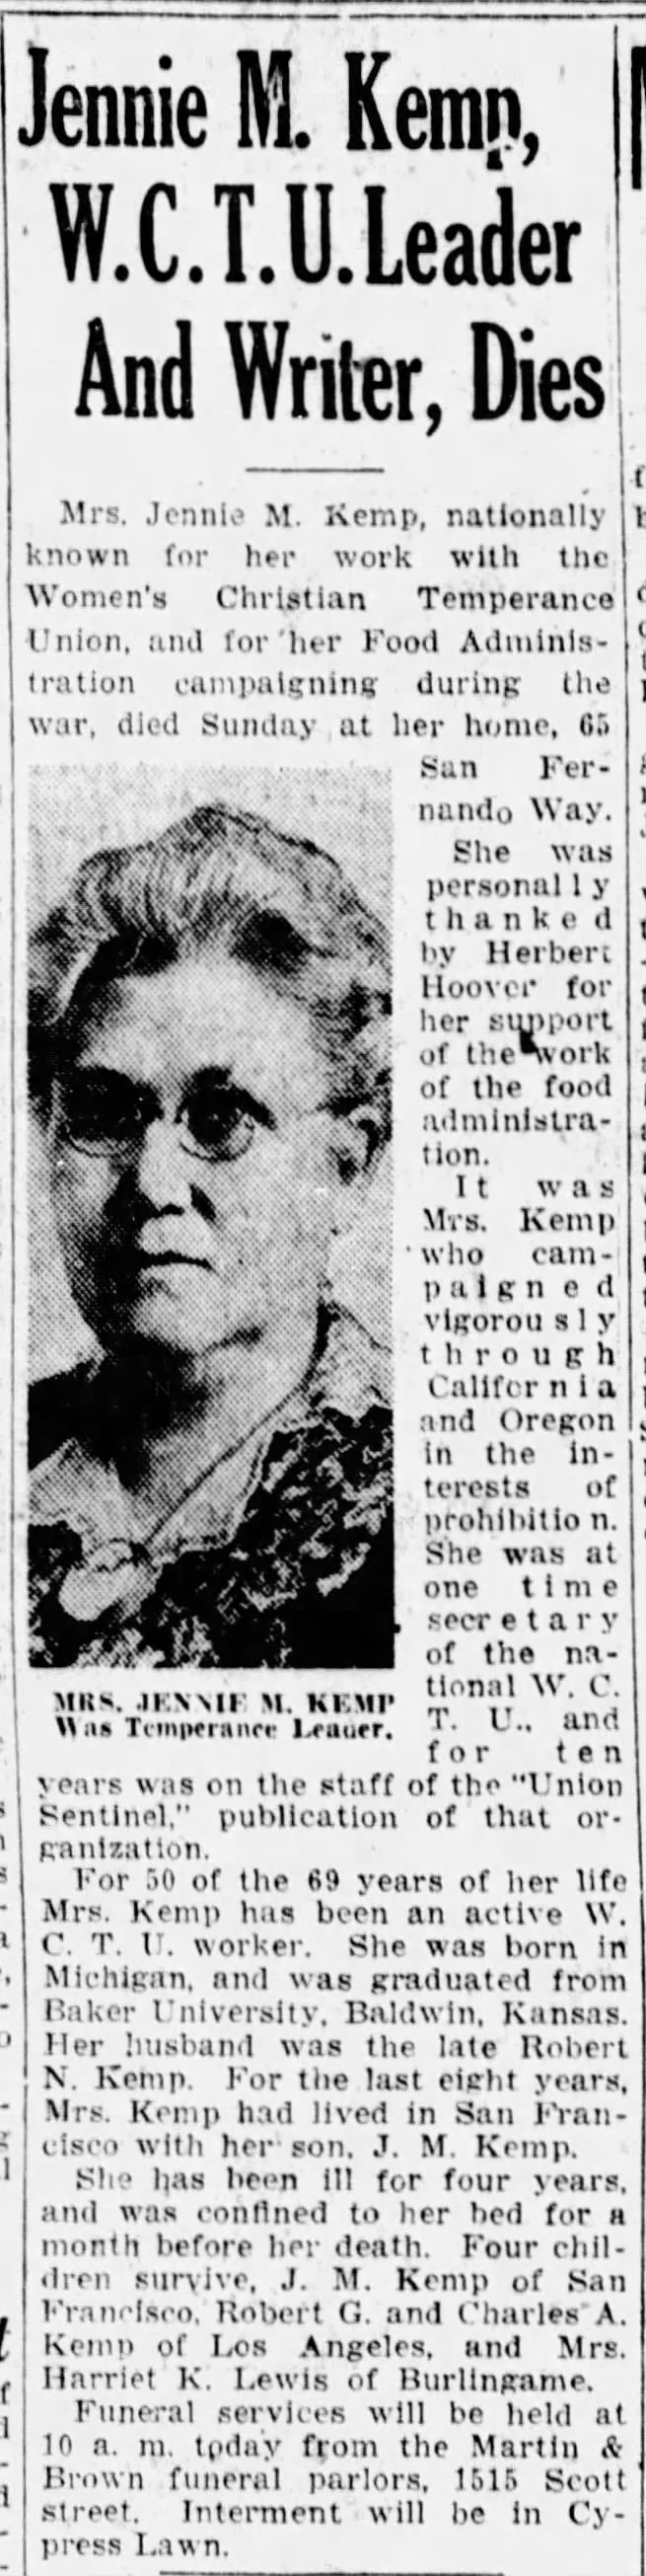 Jennie M. Kemp. Died 15 Apr 1928, San Francisco.